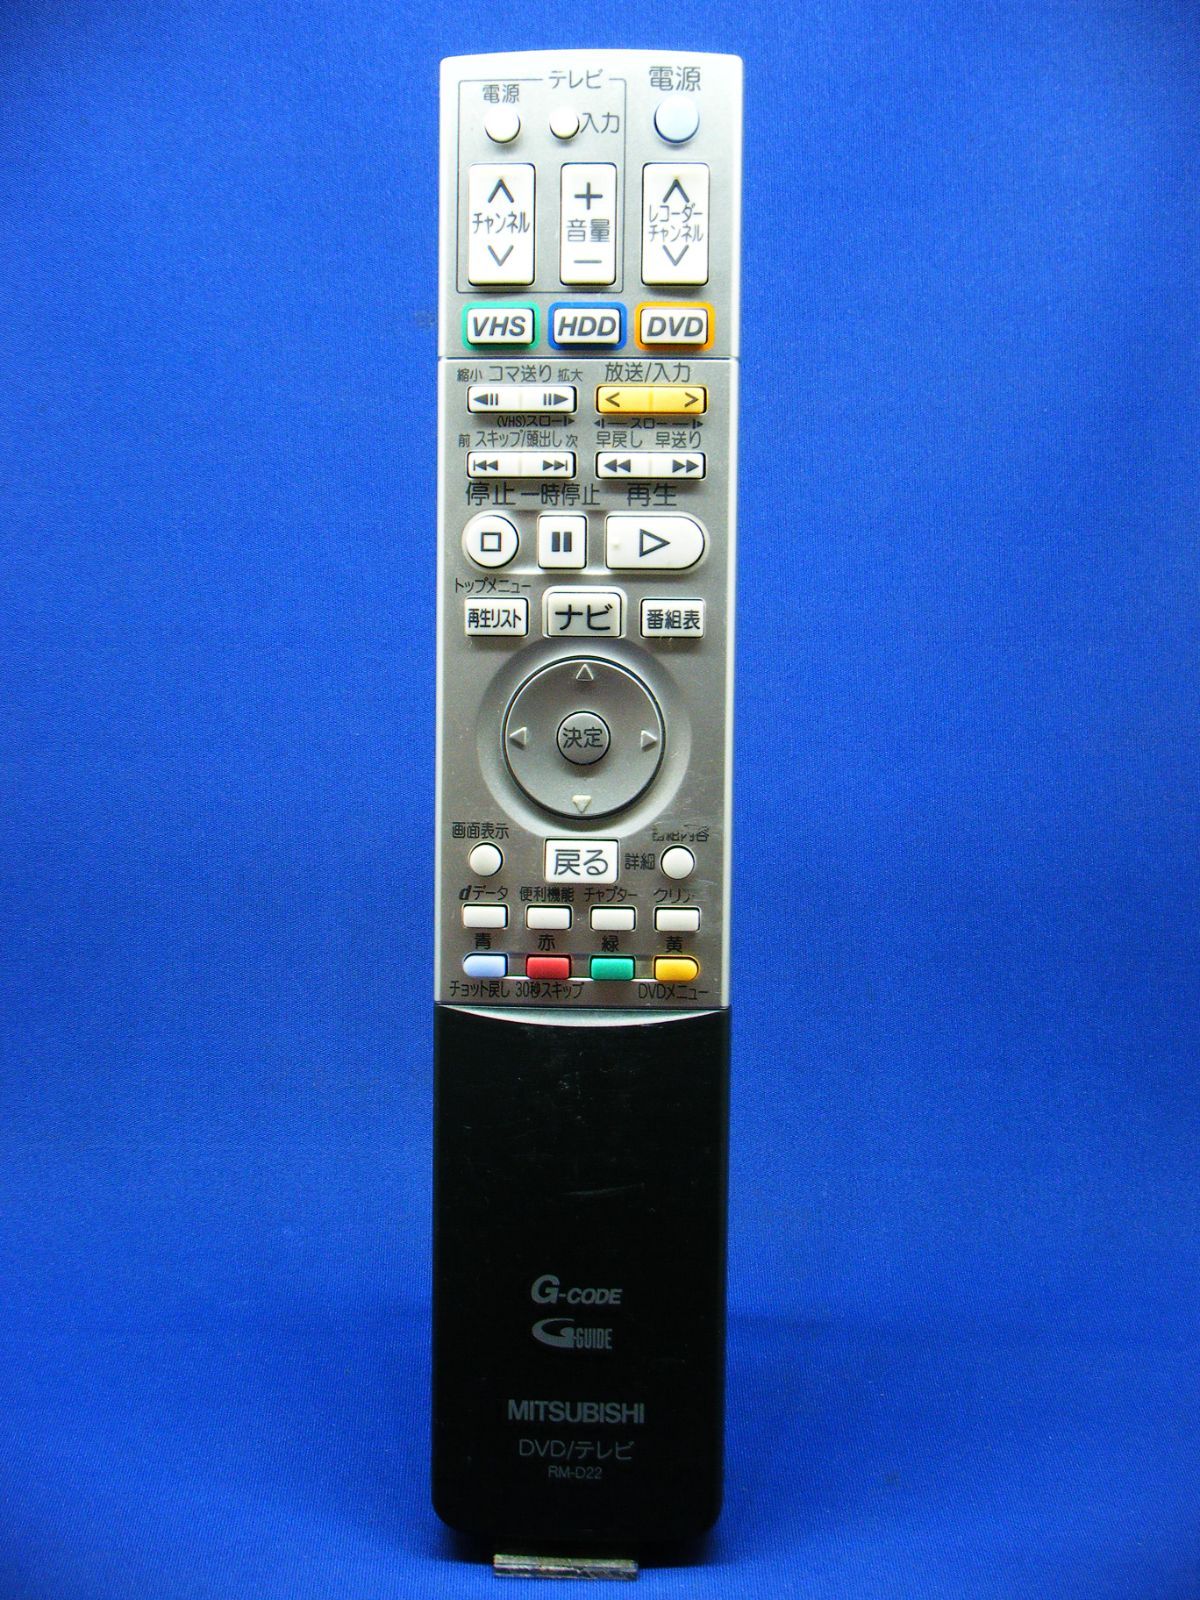 三菱電機 DVD/テレビリモコン RM-D22